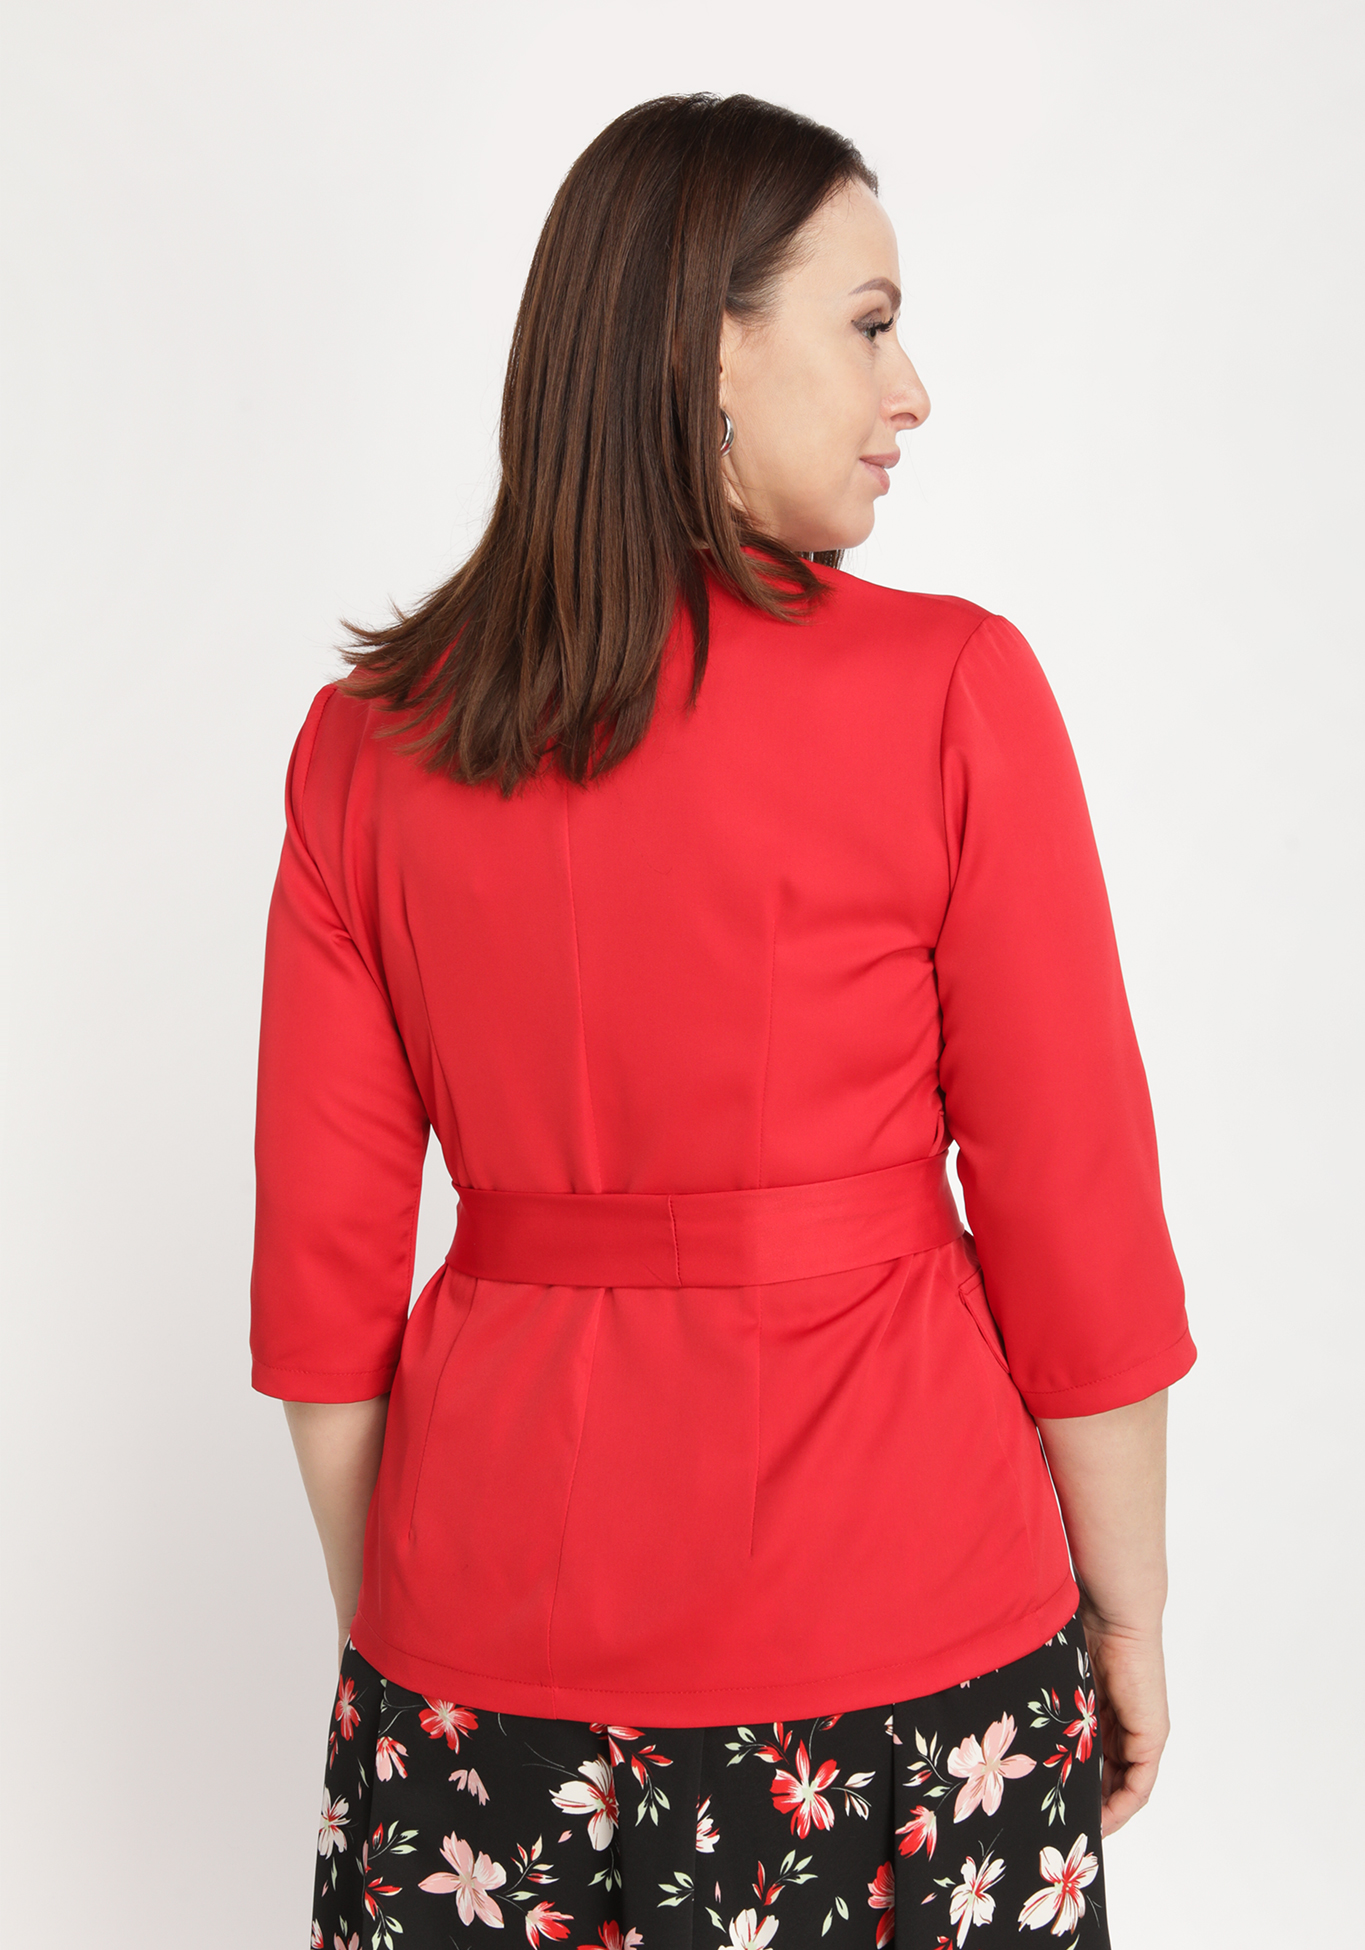 Костюм-двойка: жакет и юбка Bianka Modeno, размер 50, цвет красный - фото 10